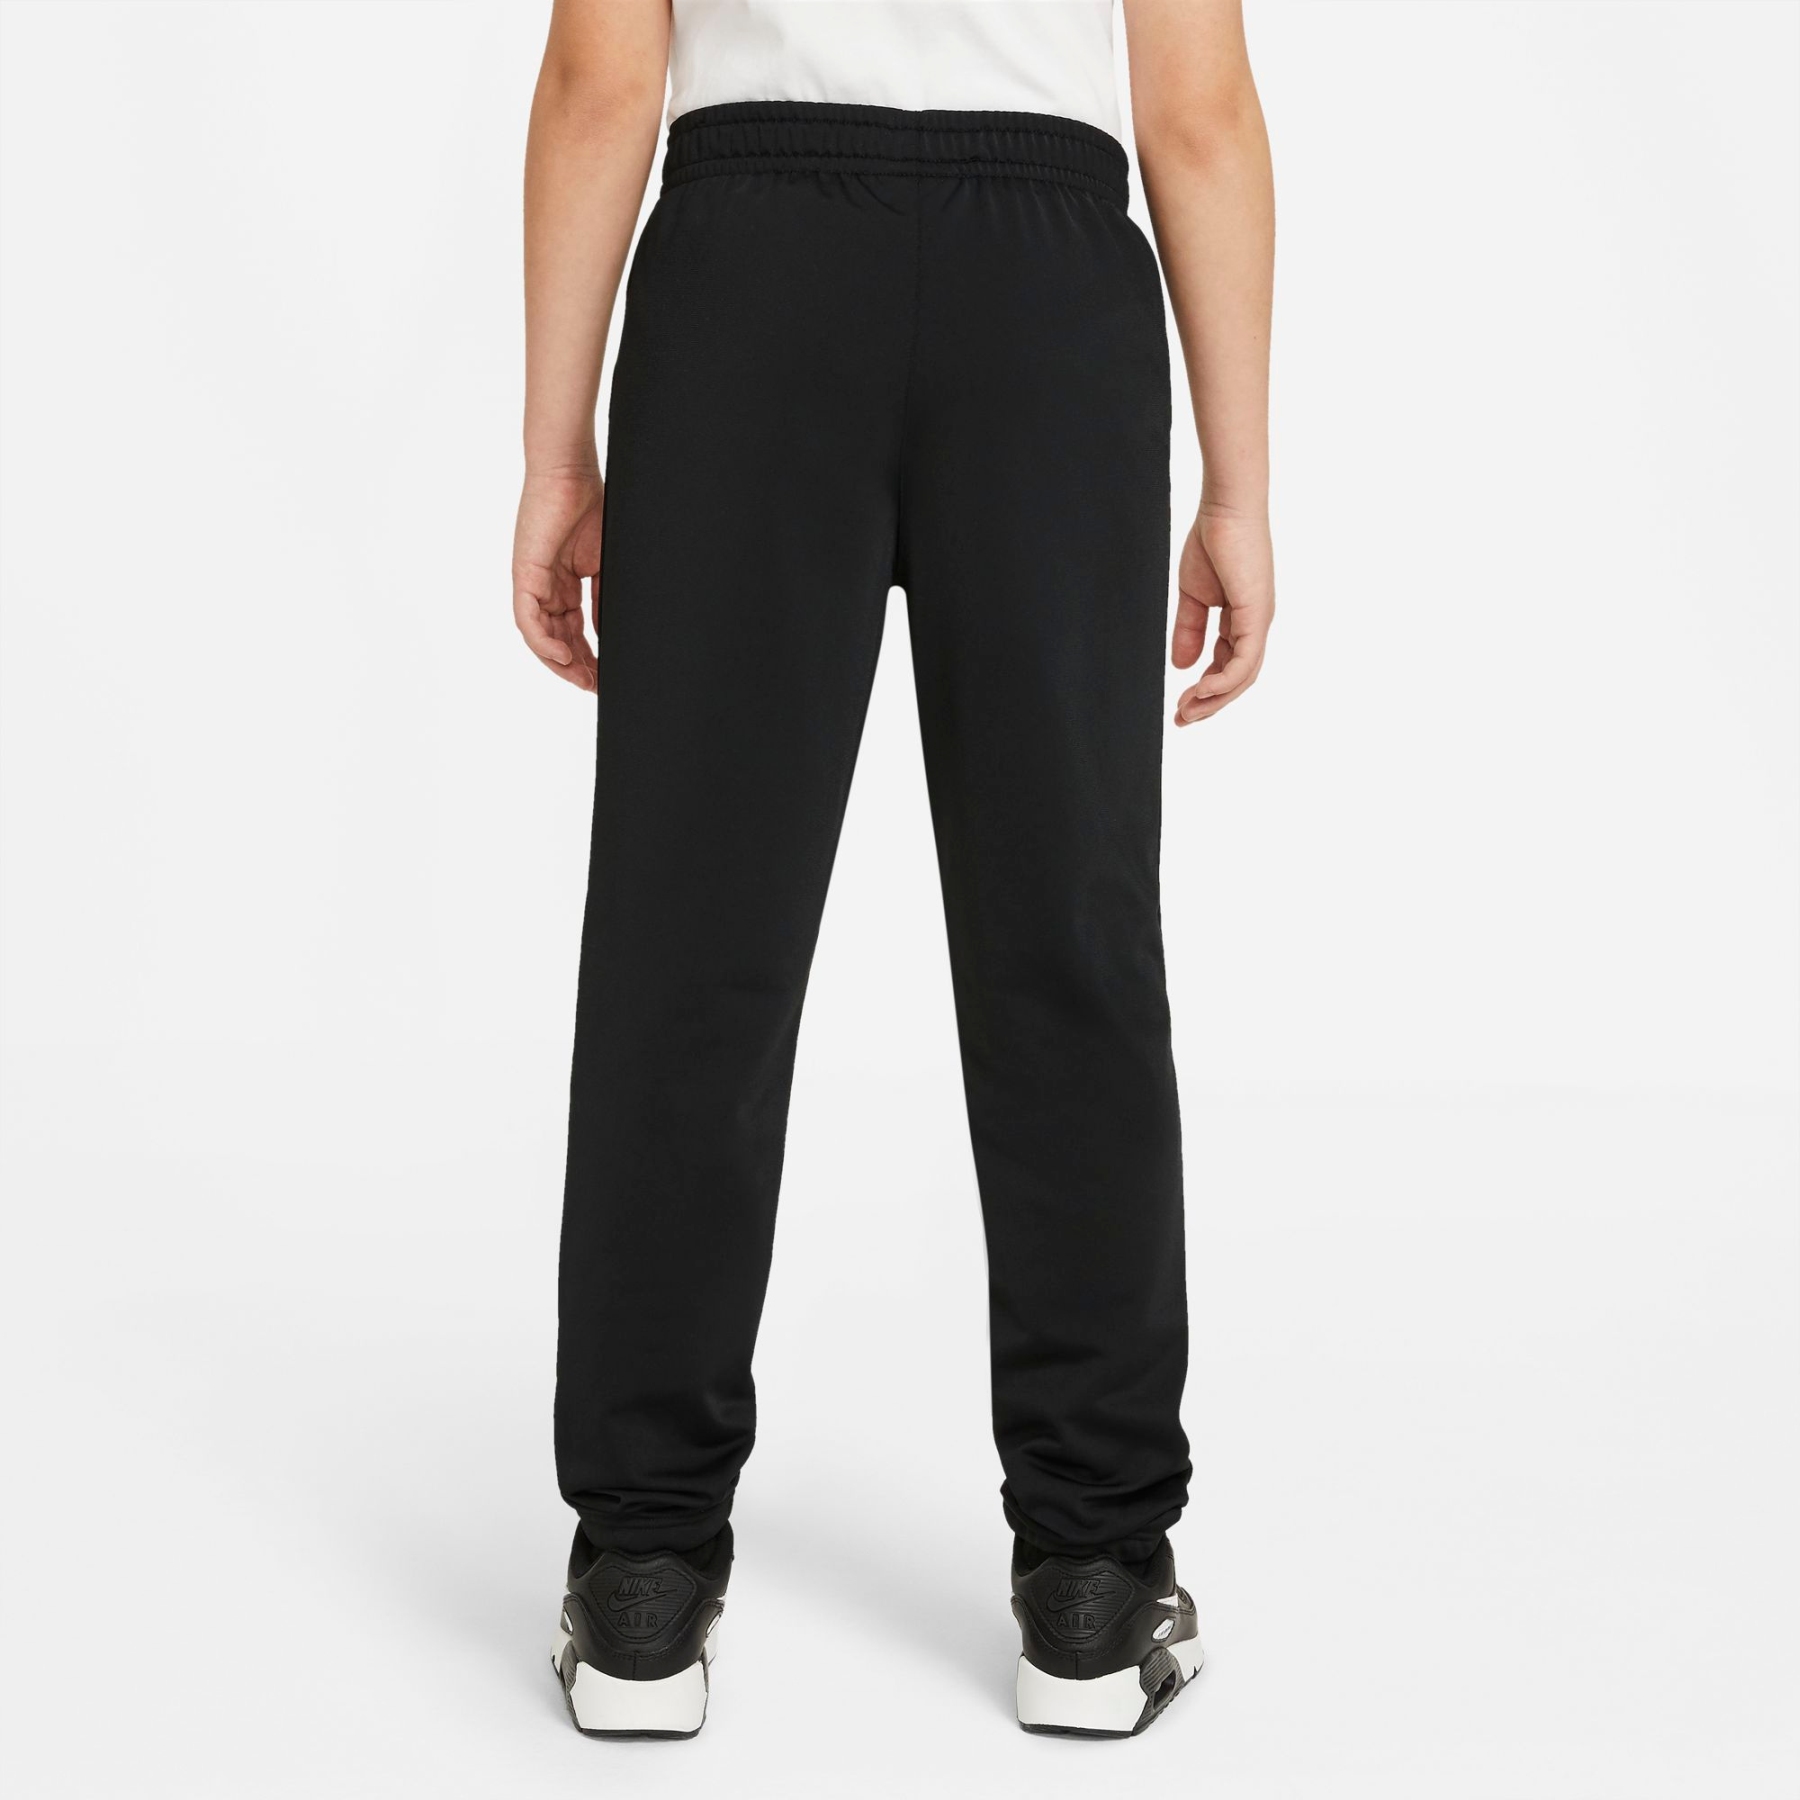 Nike Sportswear Trainingsanzug für DH9661-010 ältere schwarz/schwarz/weiss - Kinder schwarz